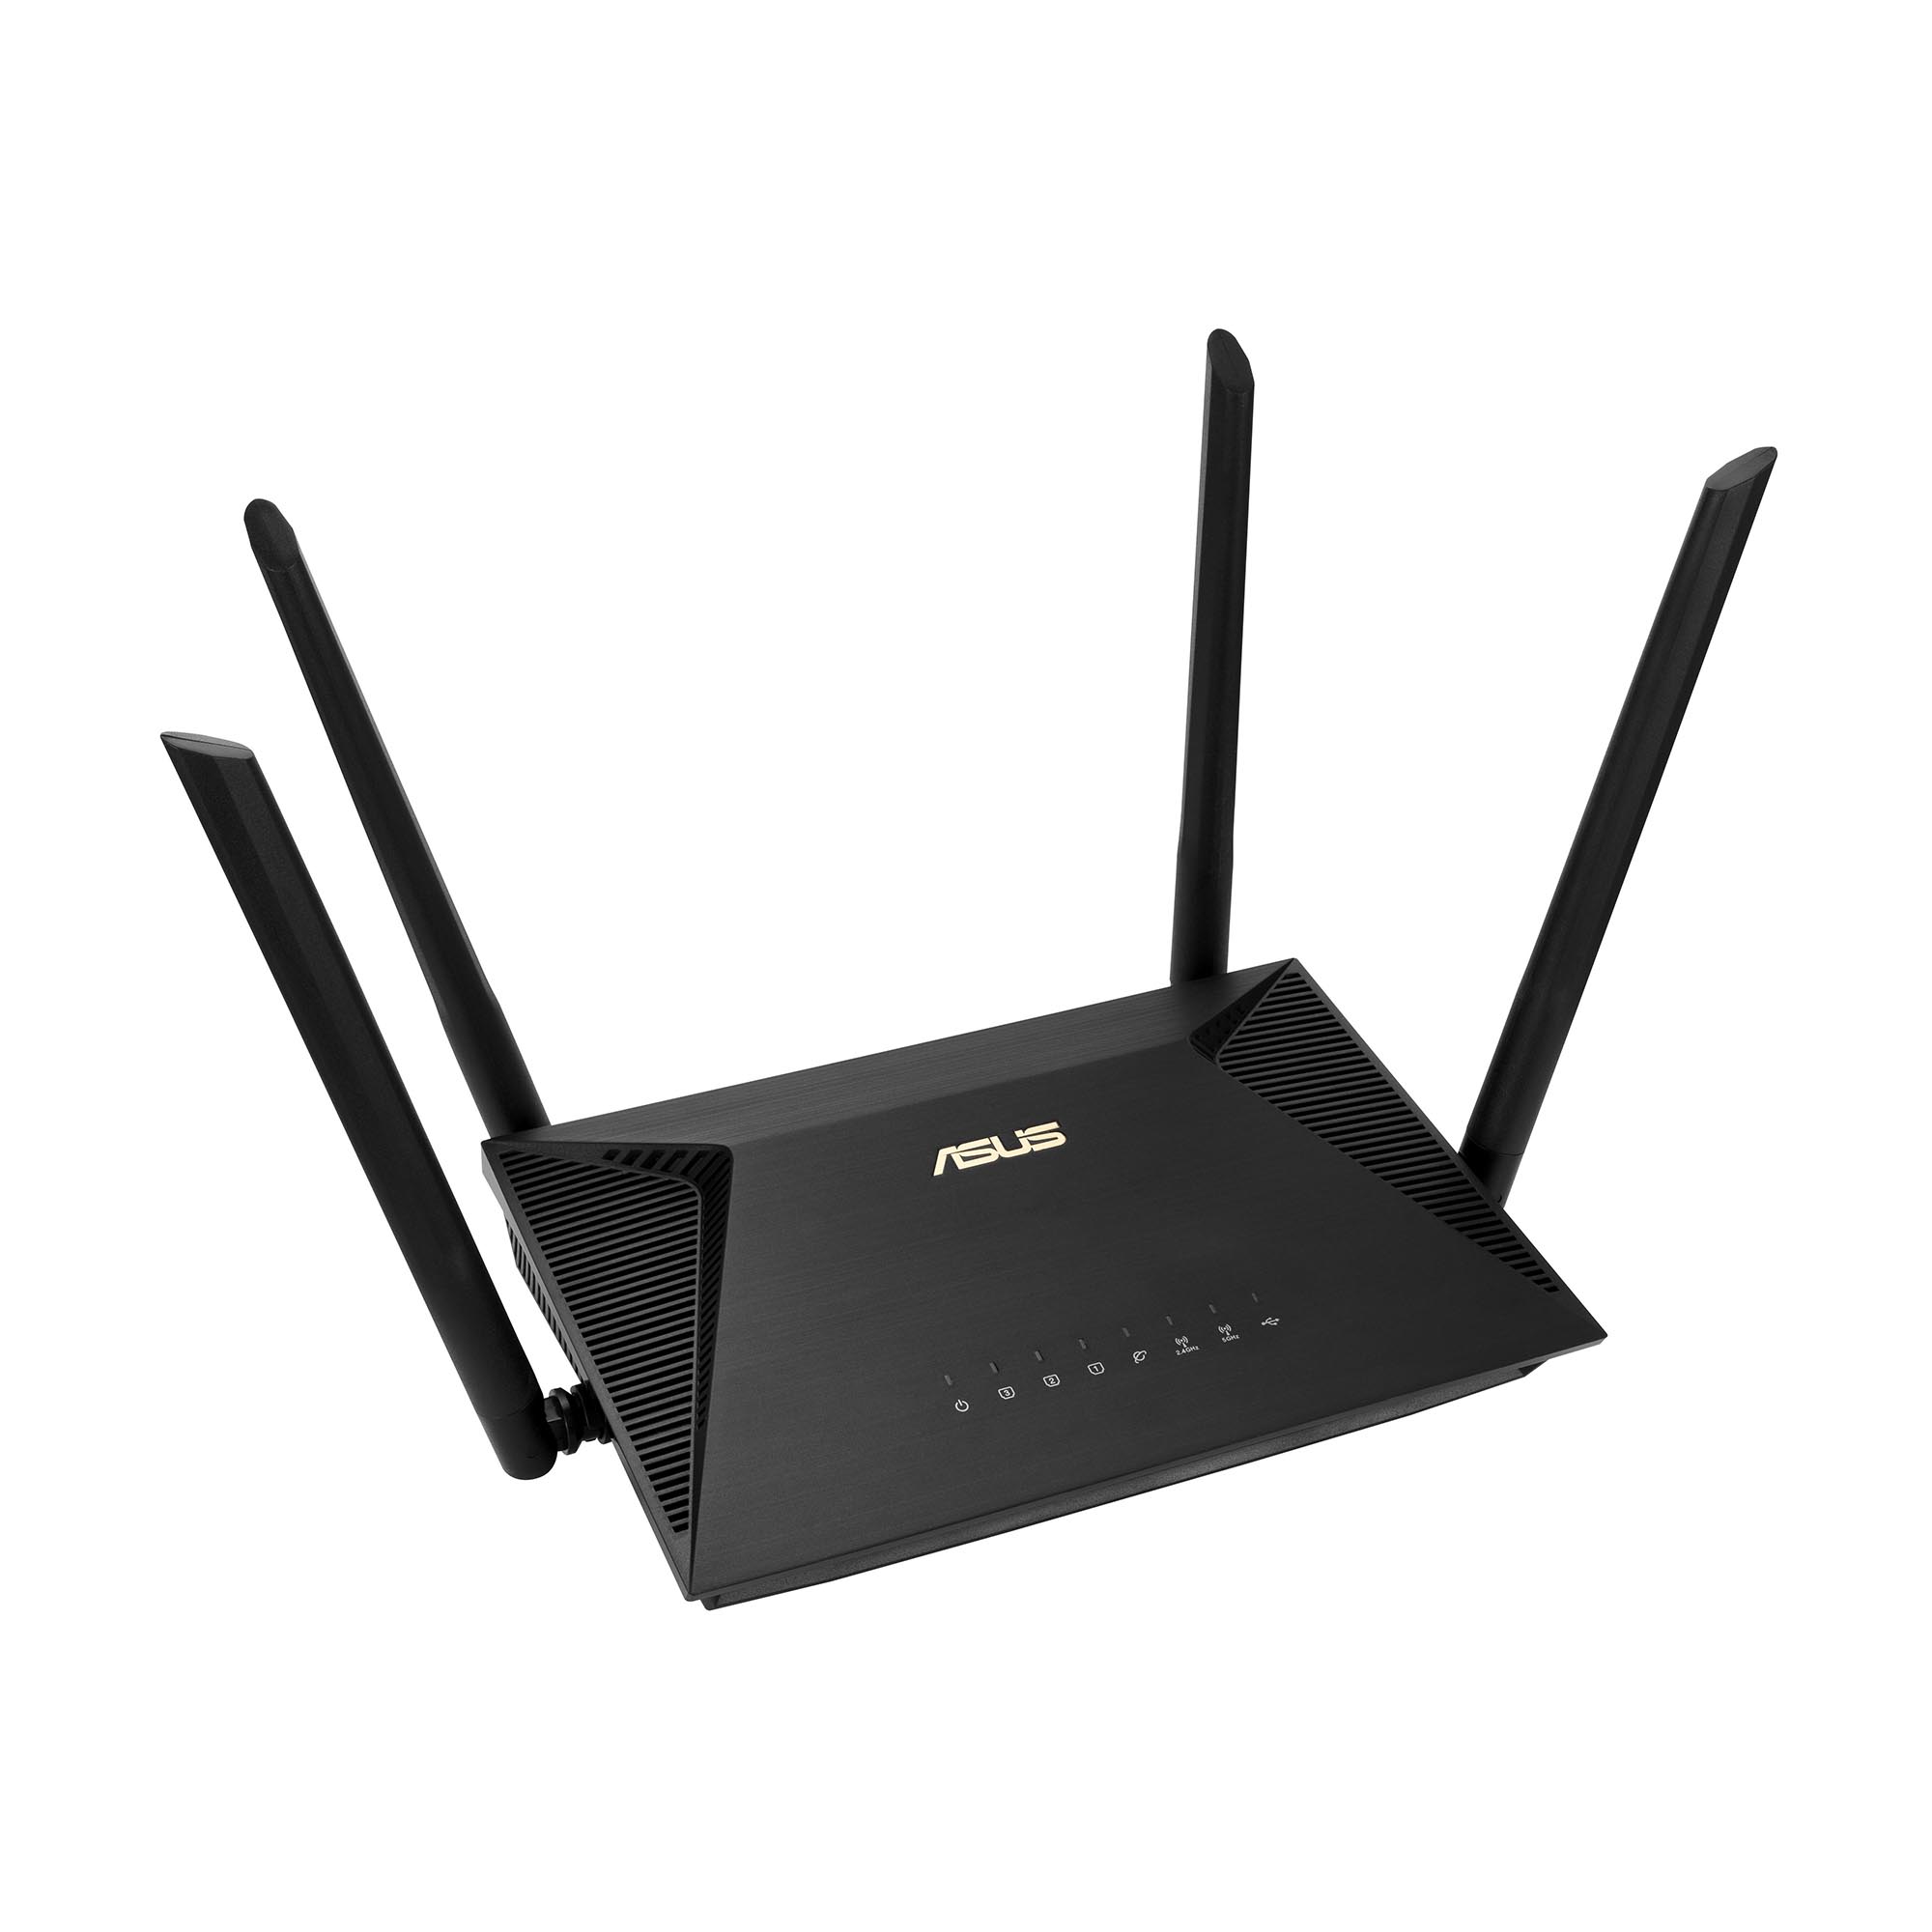 ASUS、Wi-Fi 6対応のエントリー無線LANルーター メッシュ機能も利用